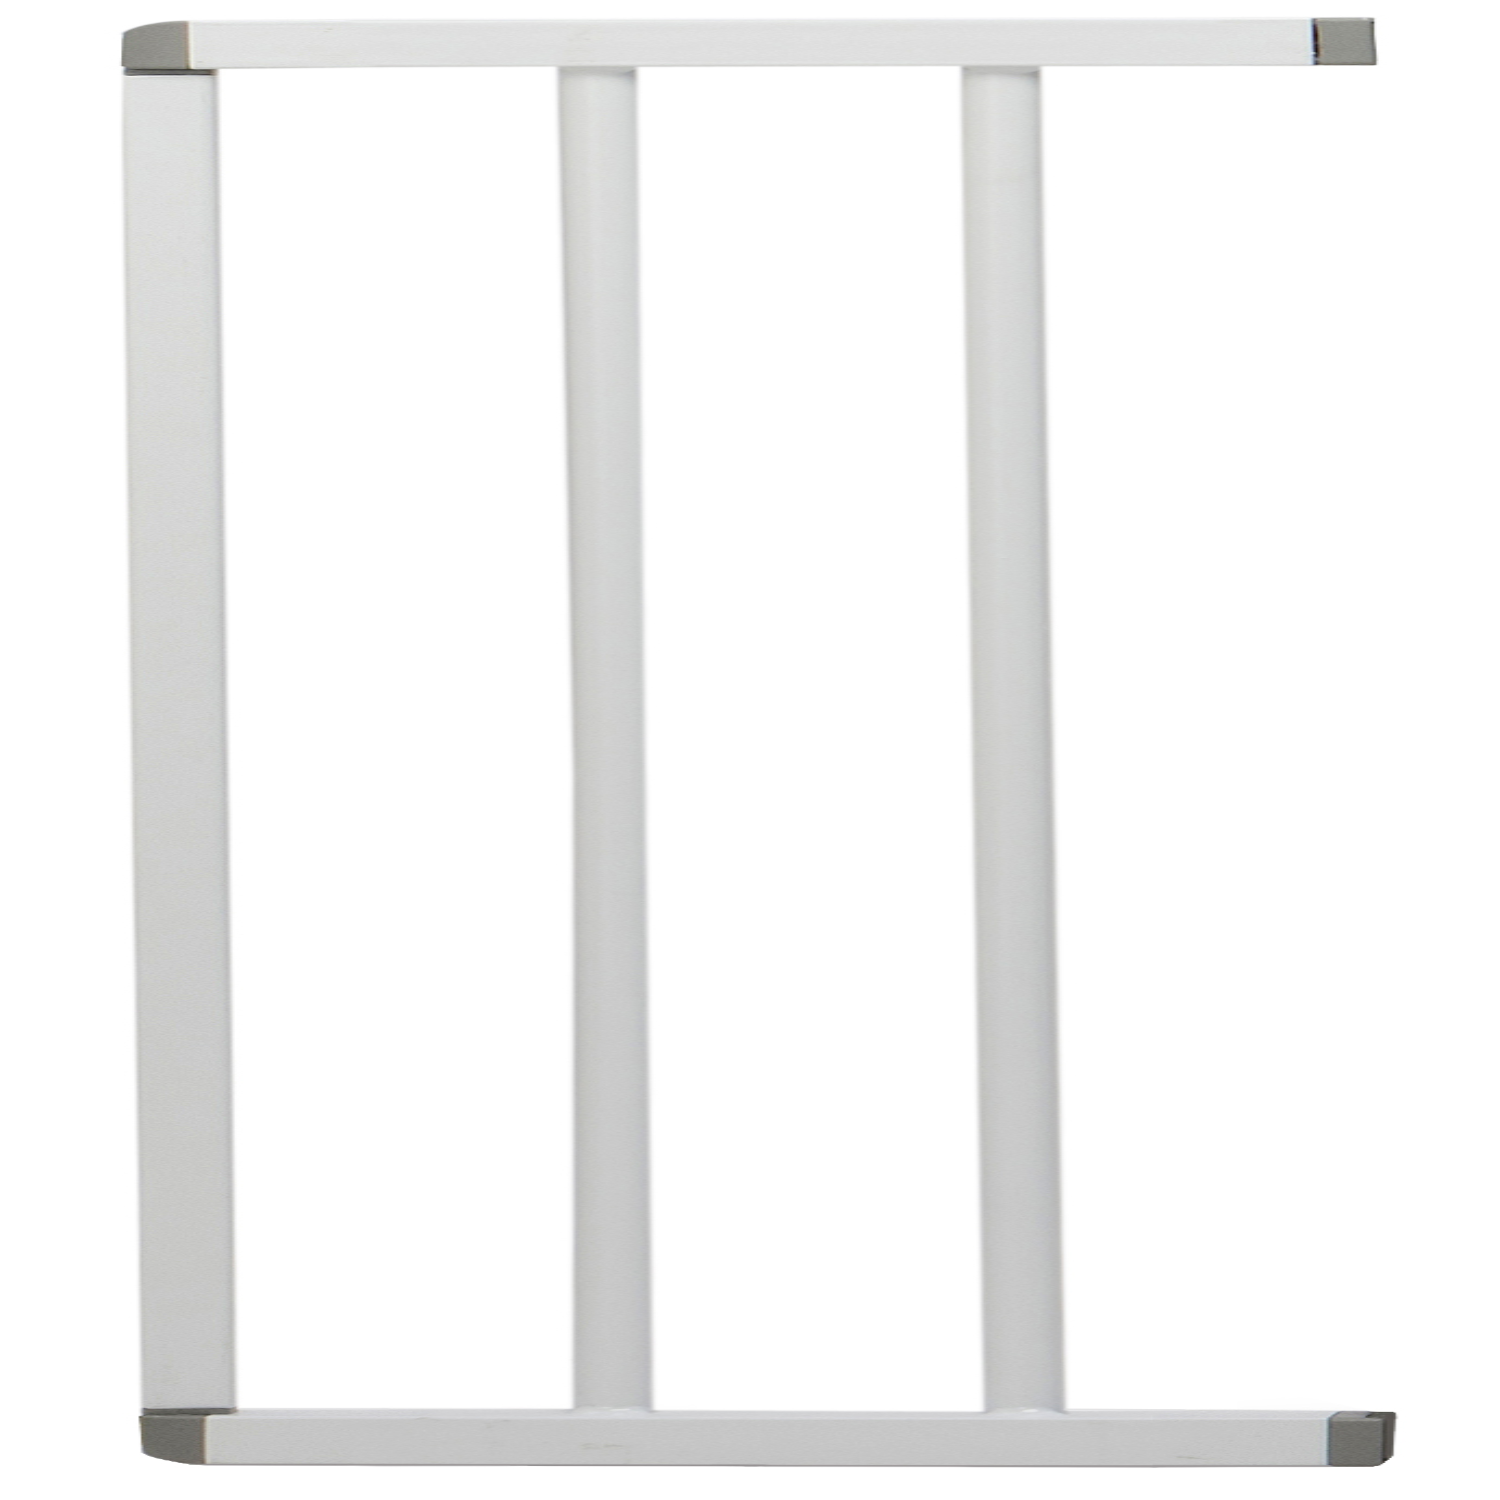 Расширитель для ворот INDOWOODS L/Y 17 см металлический белый - фото 2